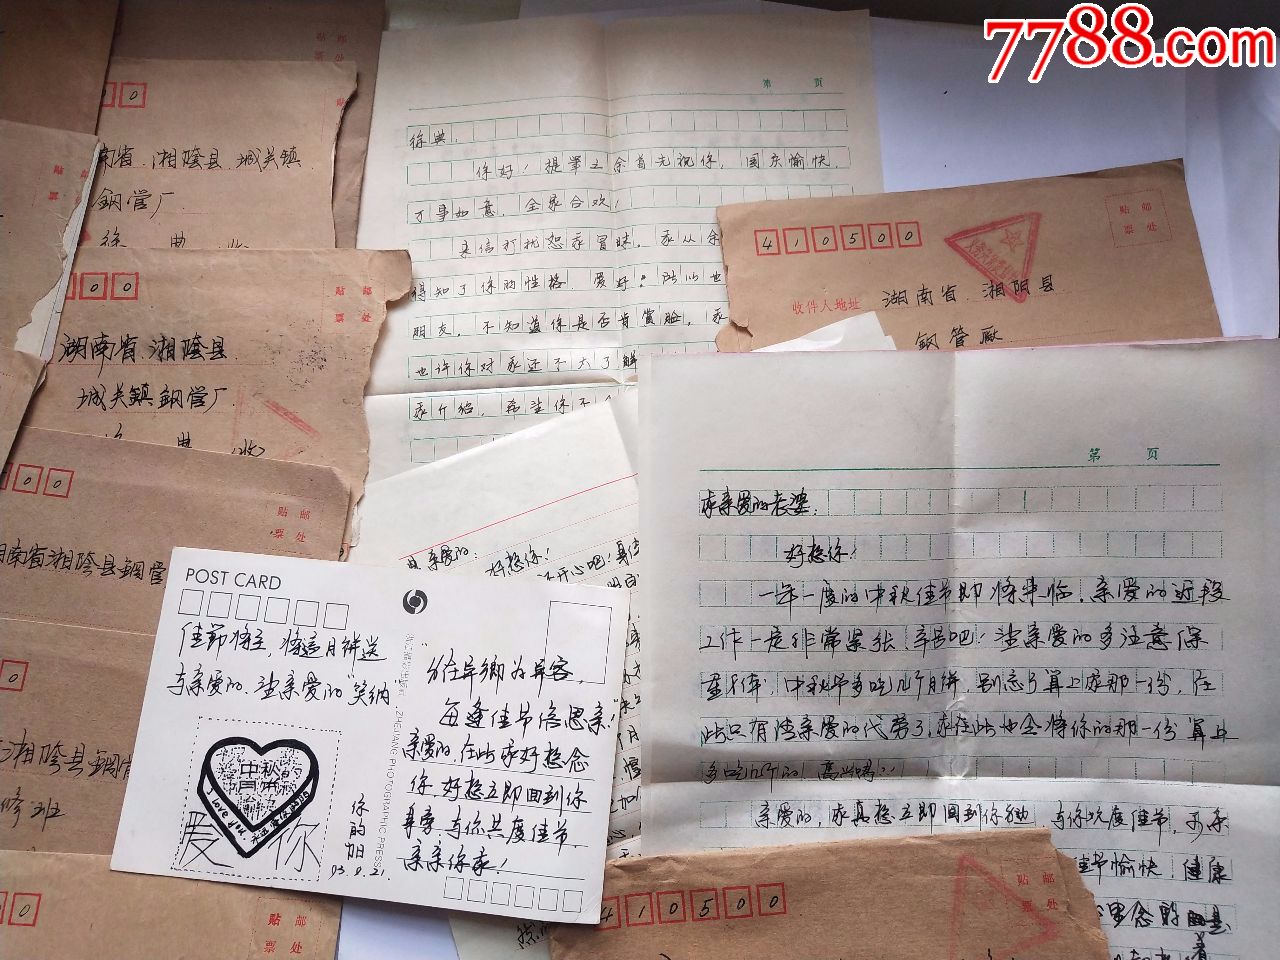 一个军人的爱情故事,一年时间30封左右信件,从认识.